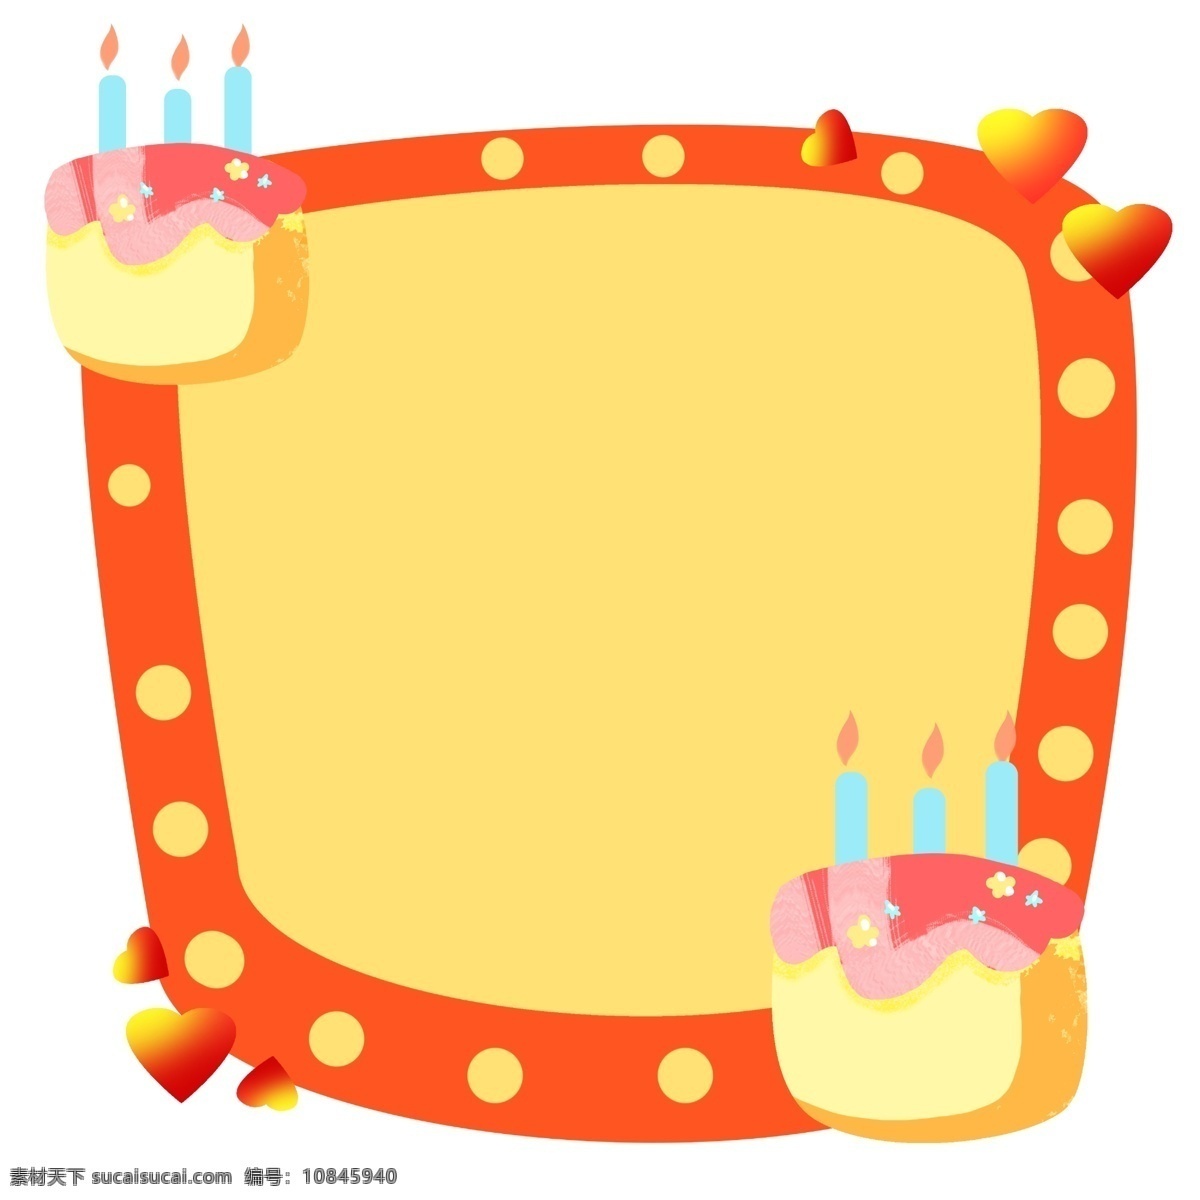 生日蛋糕 装饰 边框 可爱